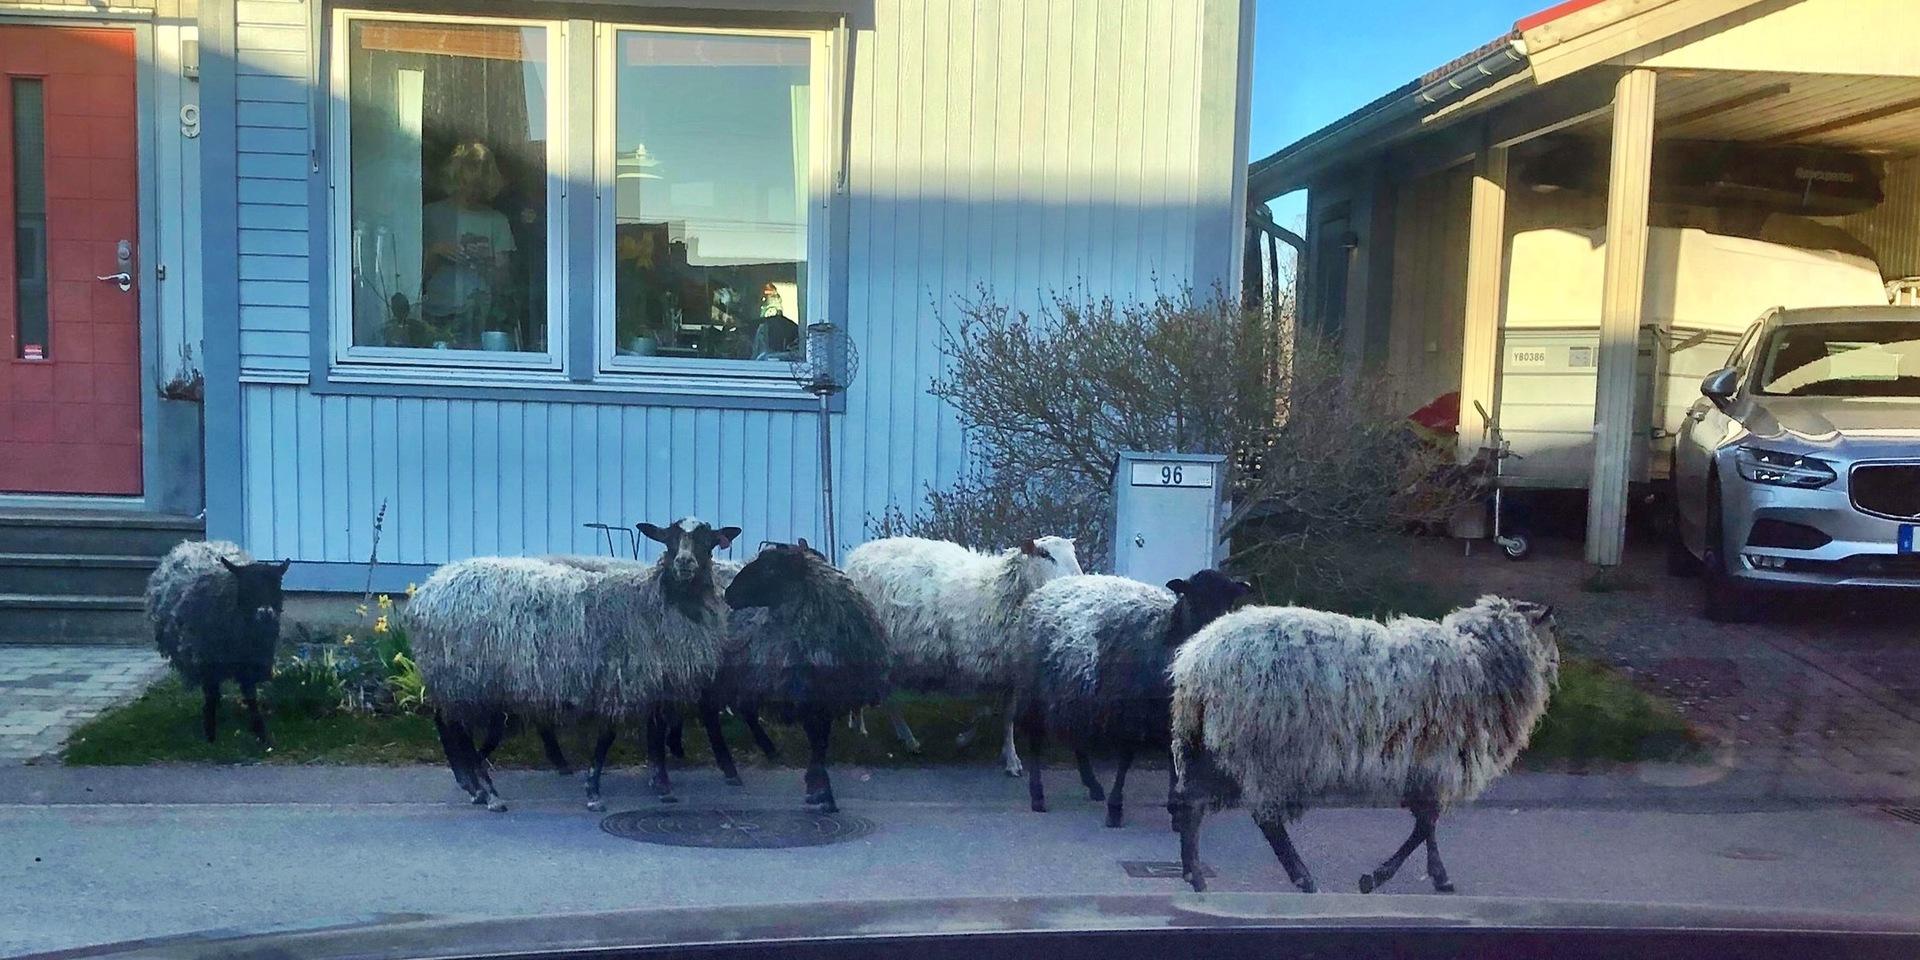 På torsdagsmorgonen fick Tuleboborna oväntat besök när en fårskock rörde sig i grupp i området. 